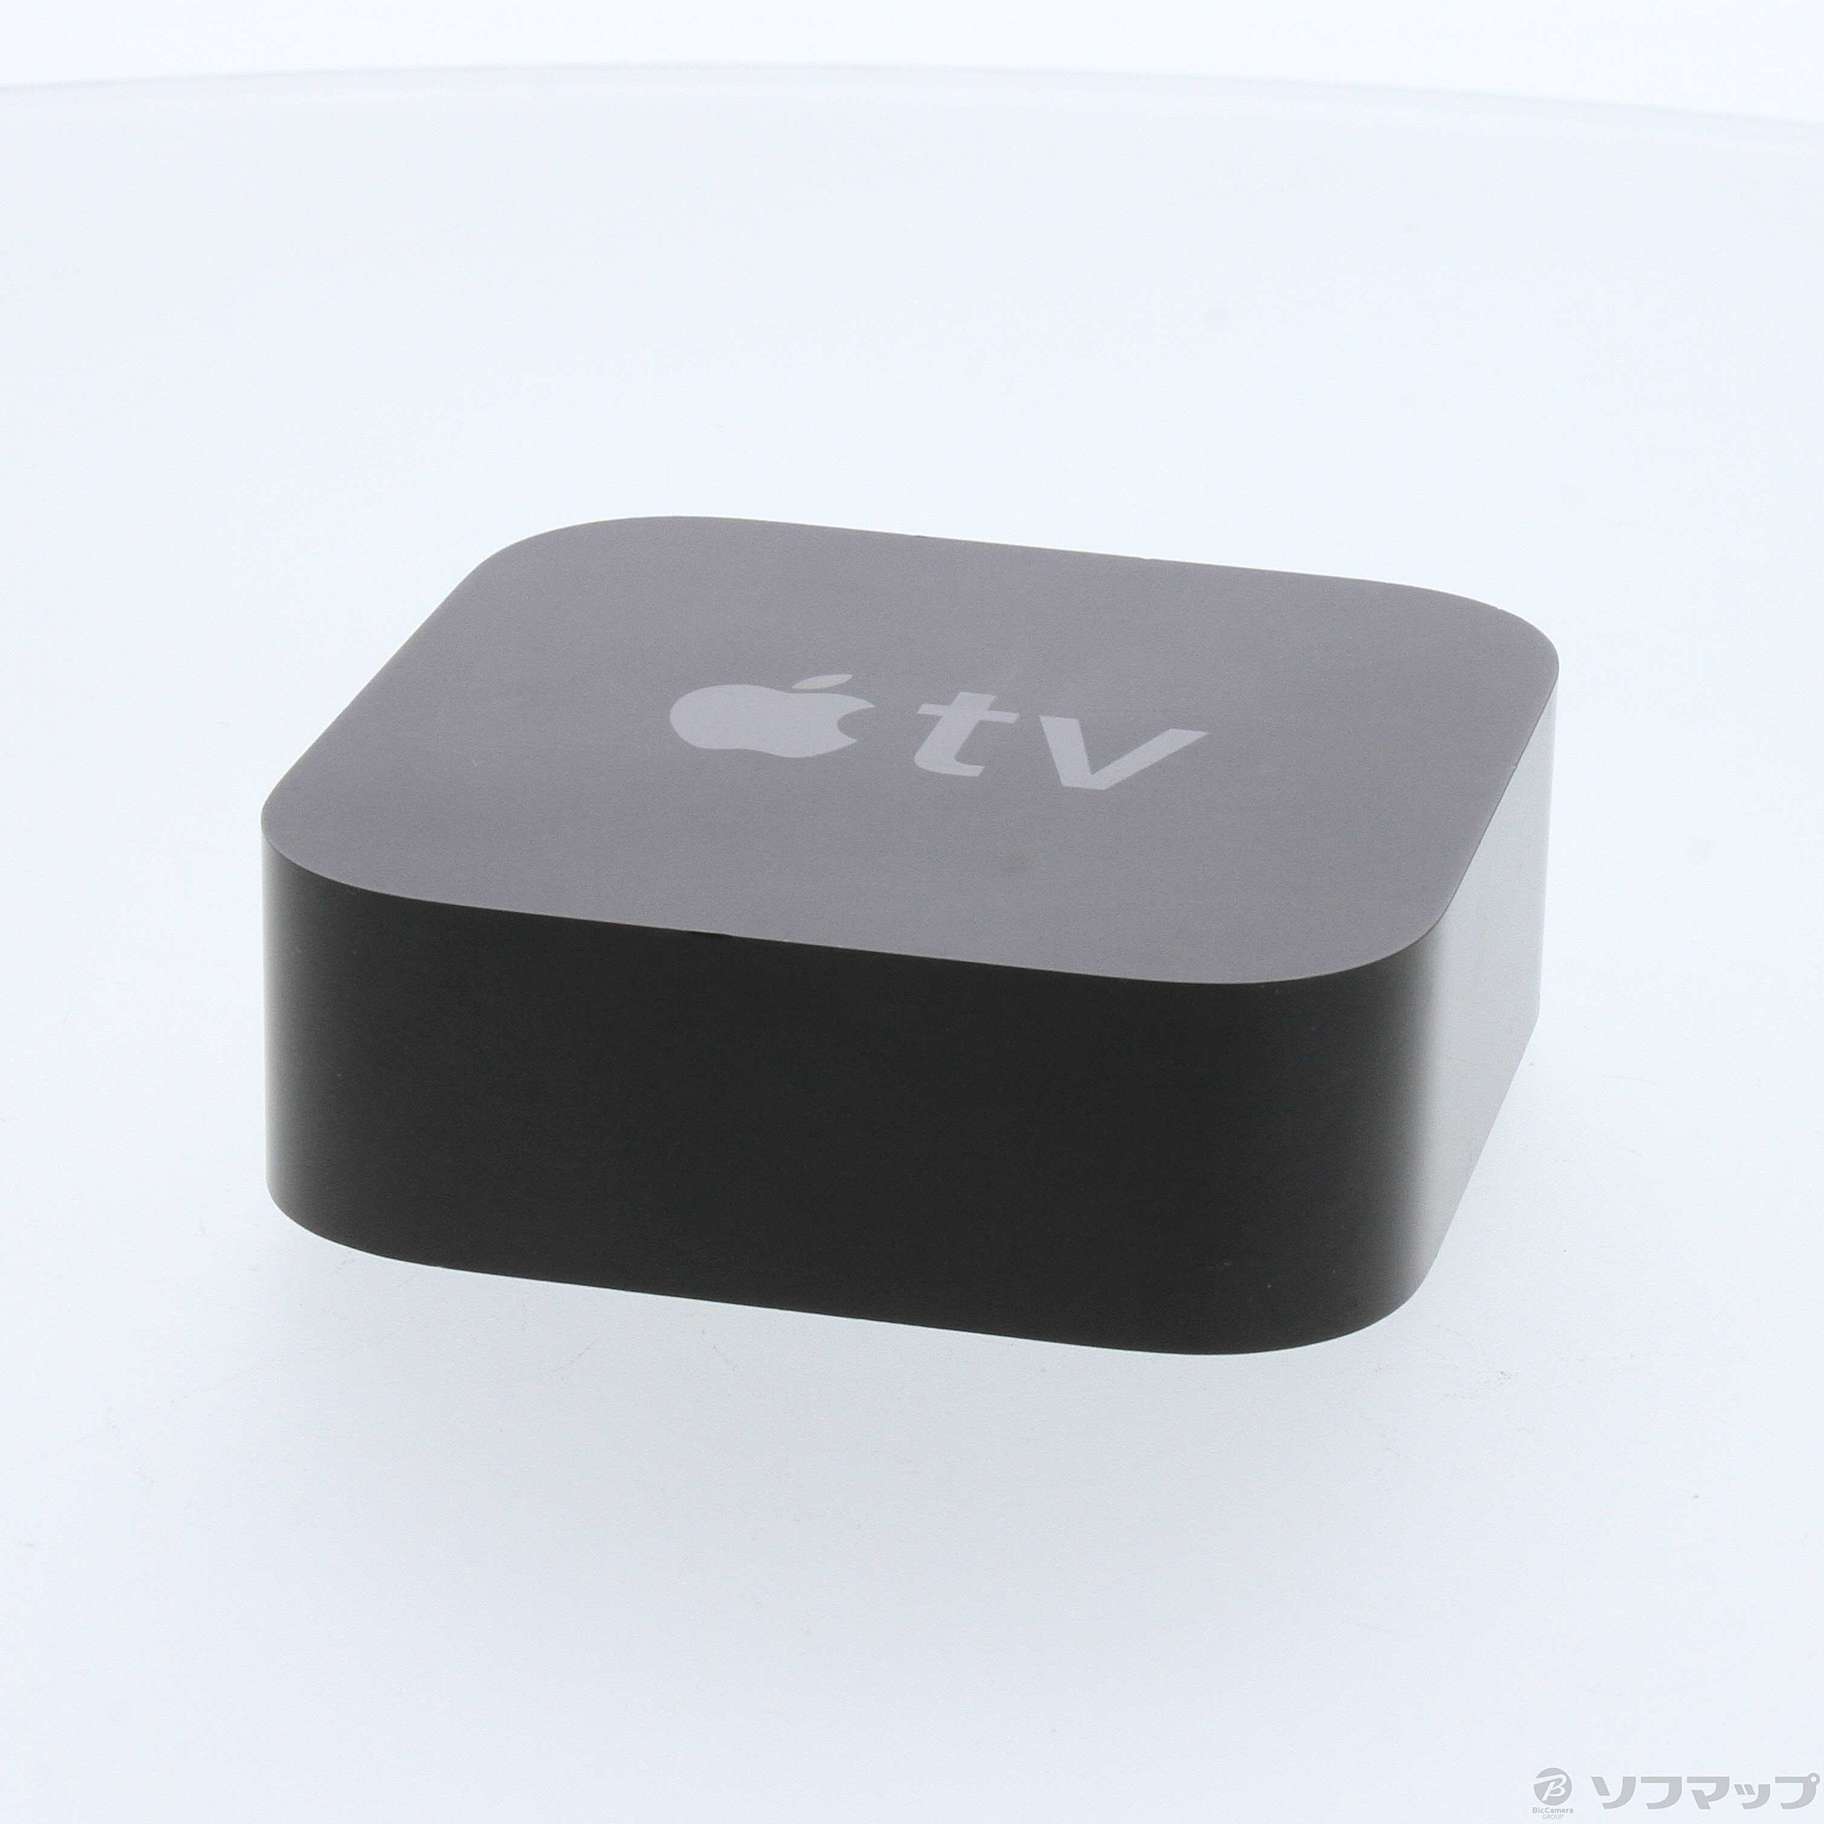 (中古)Apple Apple TV 4K 64GB MP7P2J/A(276-ud)